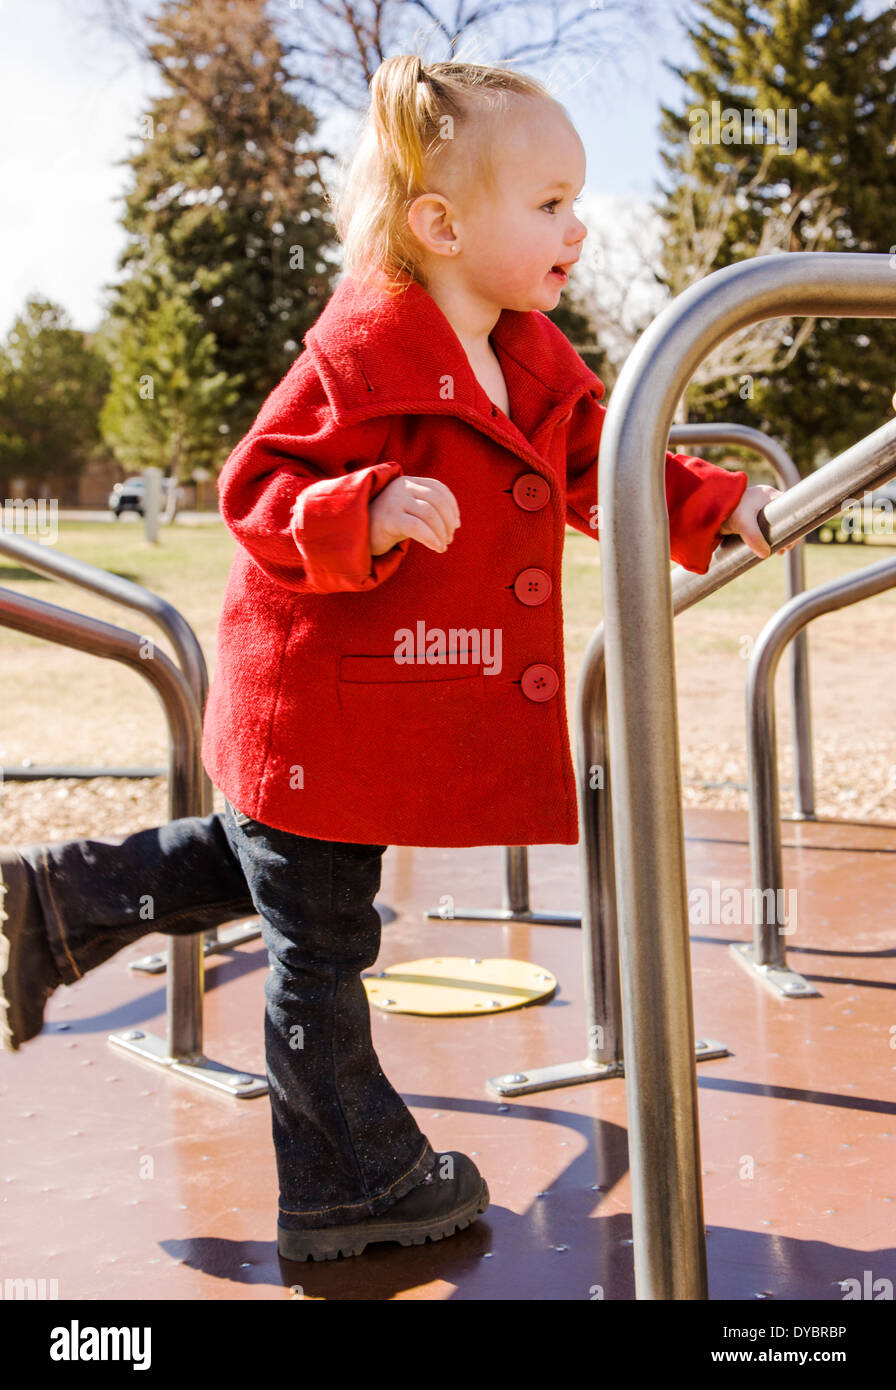 Carino, adorabile 16 mese bambina gioca su un parco giochi per bambini, merry-go-round Foto Stock